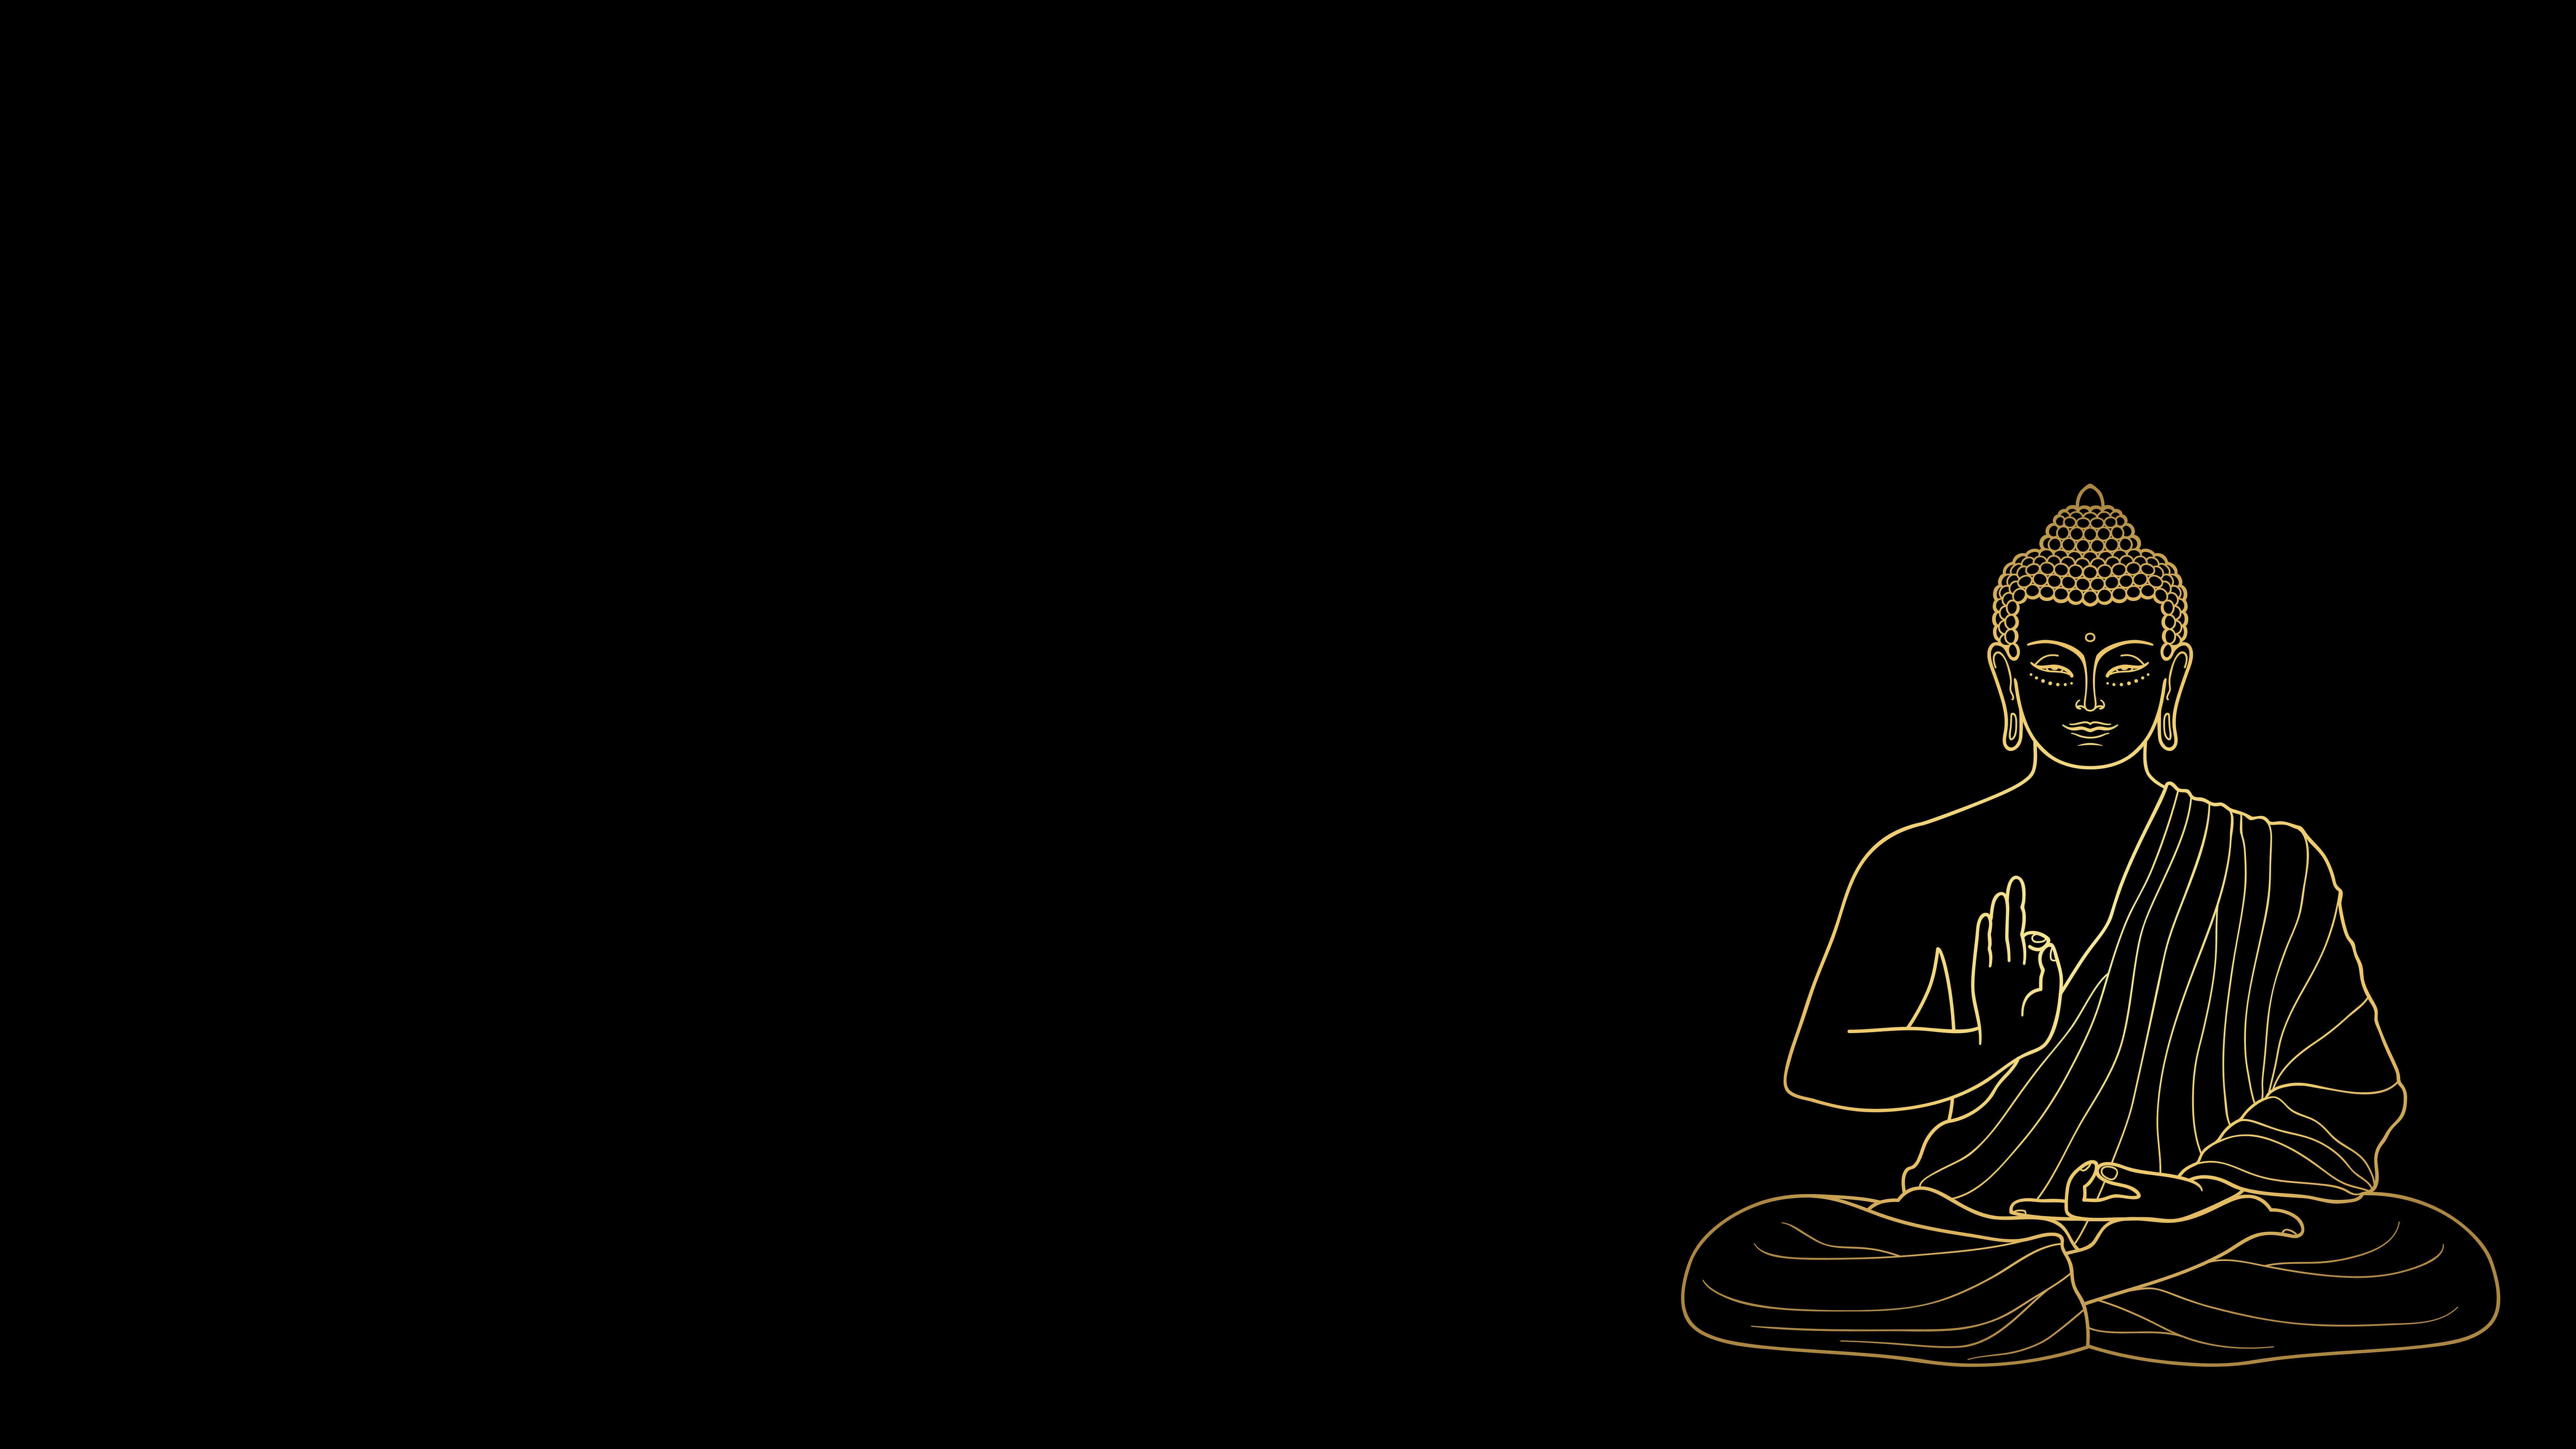 Tận hưởng một không gian yên bình với hình nền Phật siêu nét. Khám phá các chi tiết tinh tế tỉ mỉ của hình ảnh không ngừng nghỉ này.